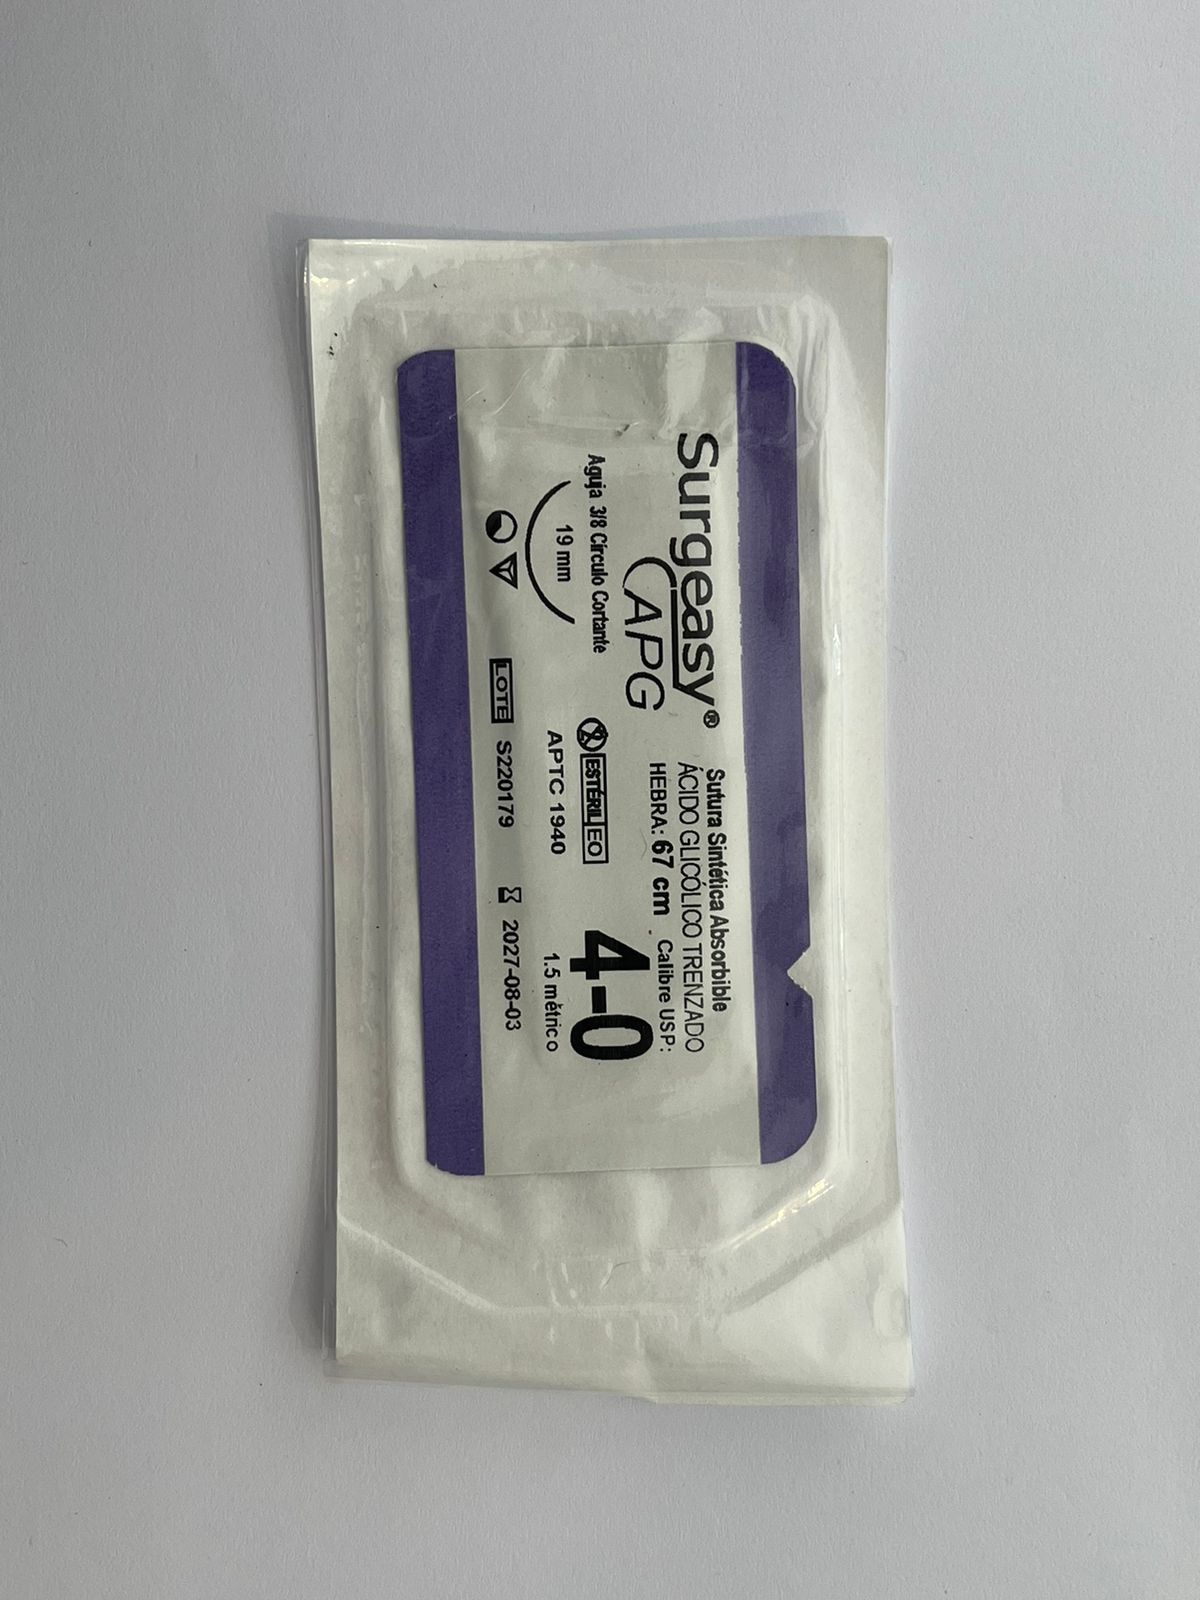 Sutura sintética absorbible polímeros de ácido glicólico trenzado suelta surgeasy apg